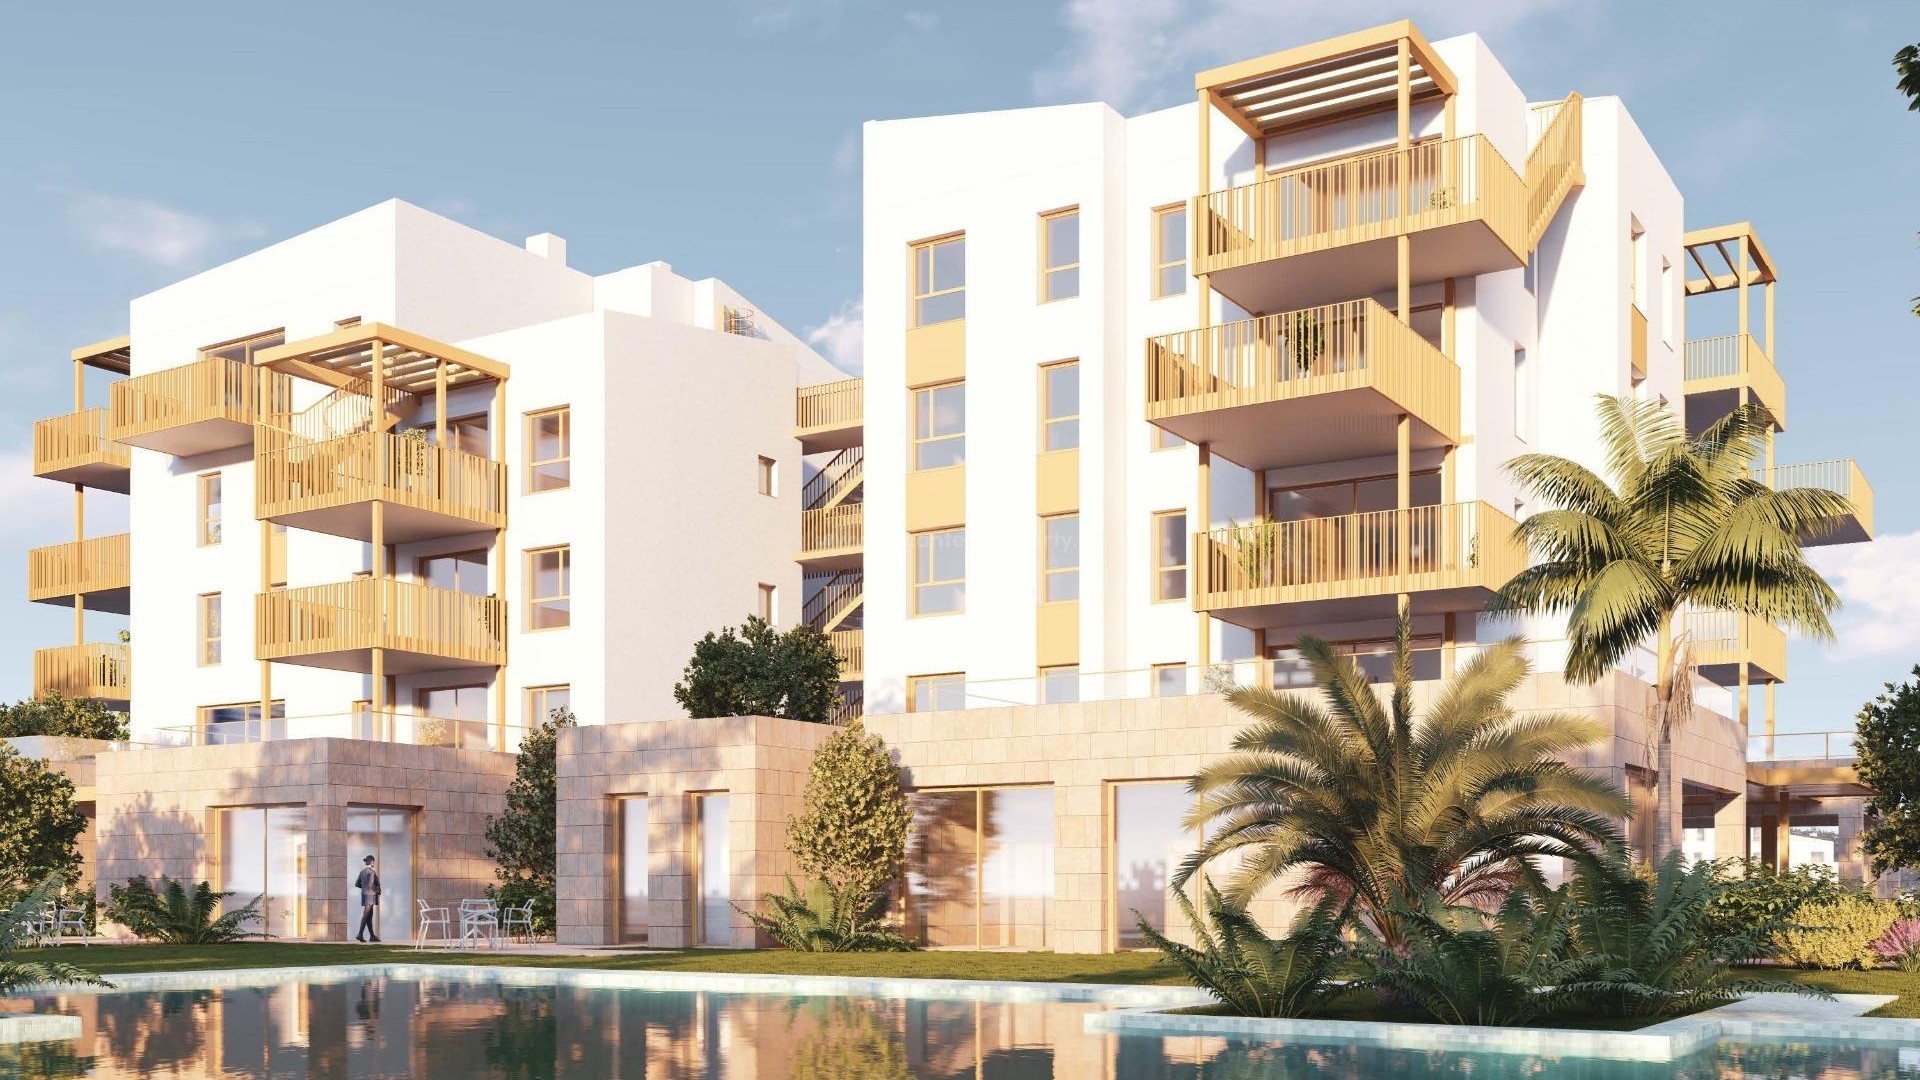 65 moderne leiligheter og rekkehus i El Vergel nær Denia, 2/3 soverom, basseng, treningsstudio, tett ved La Almadraba-stranden i Denia.